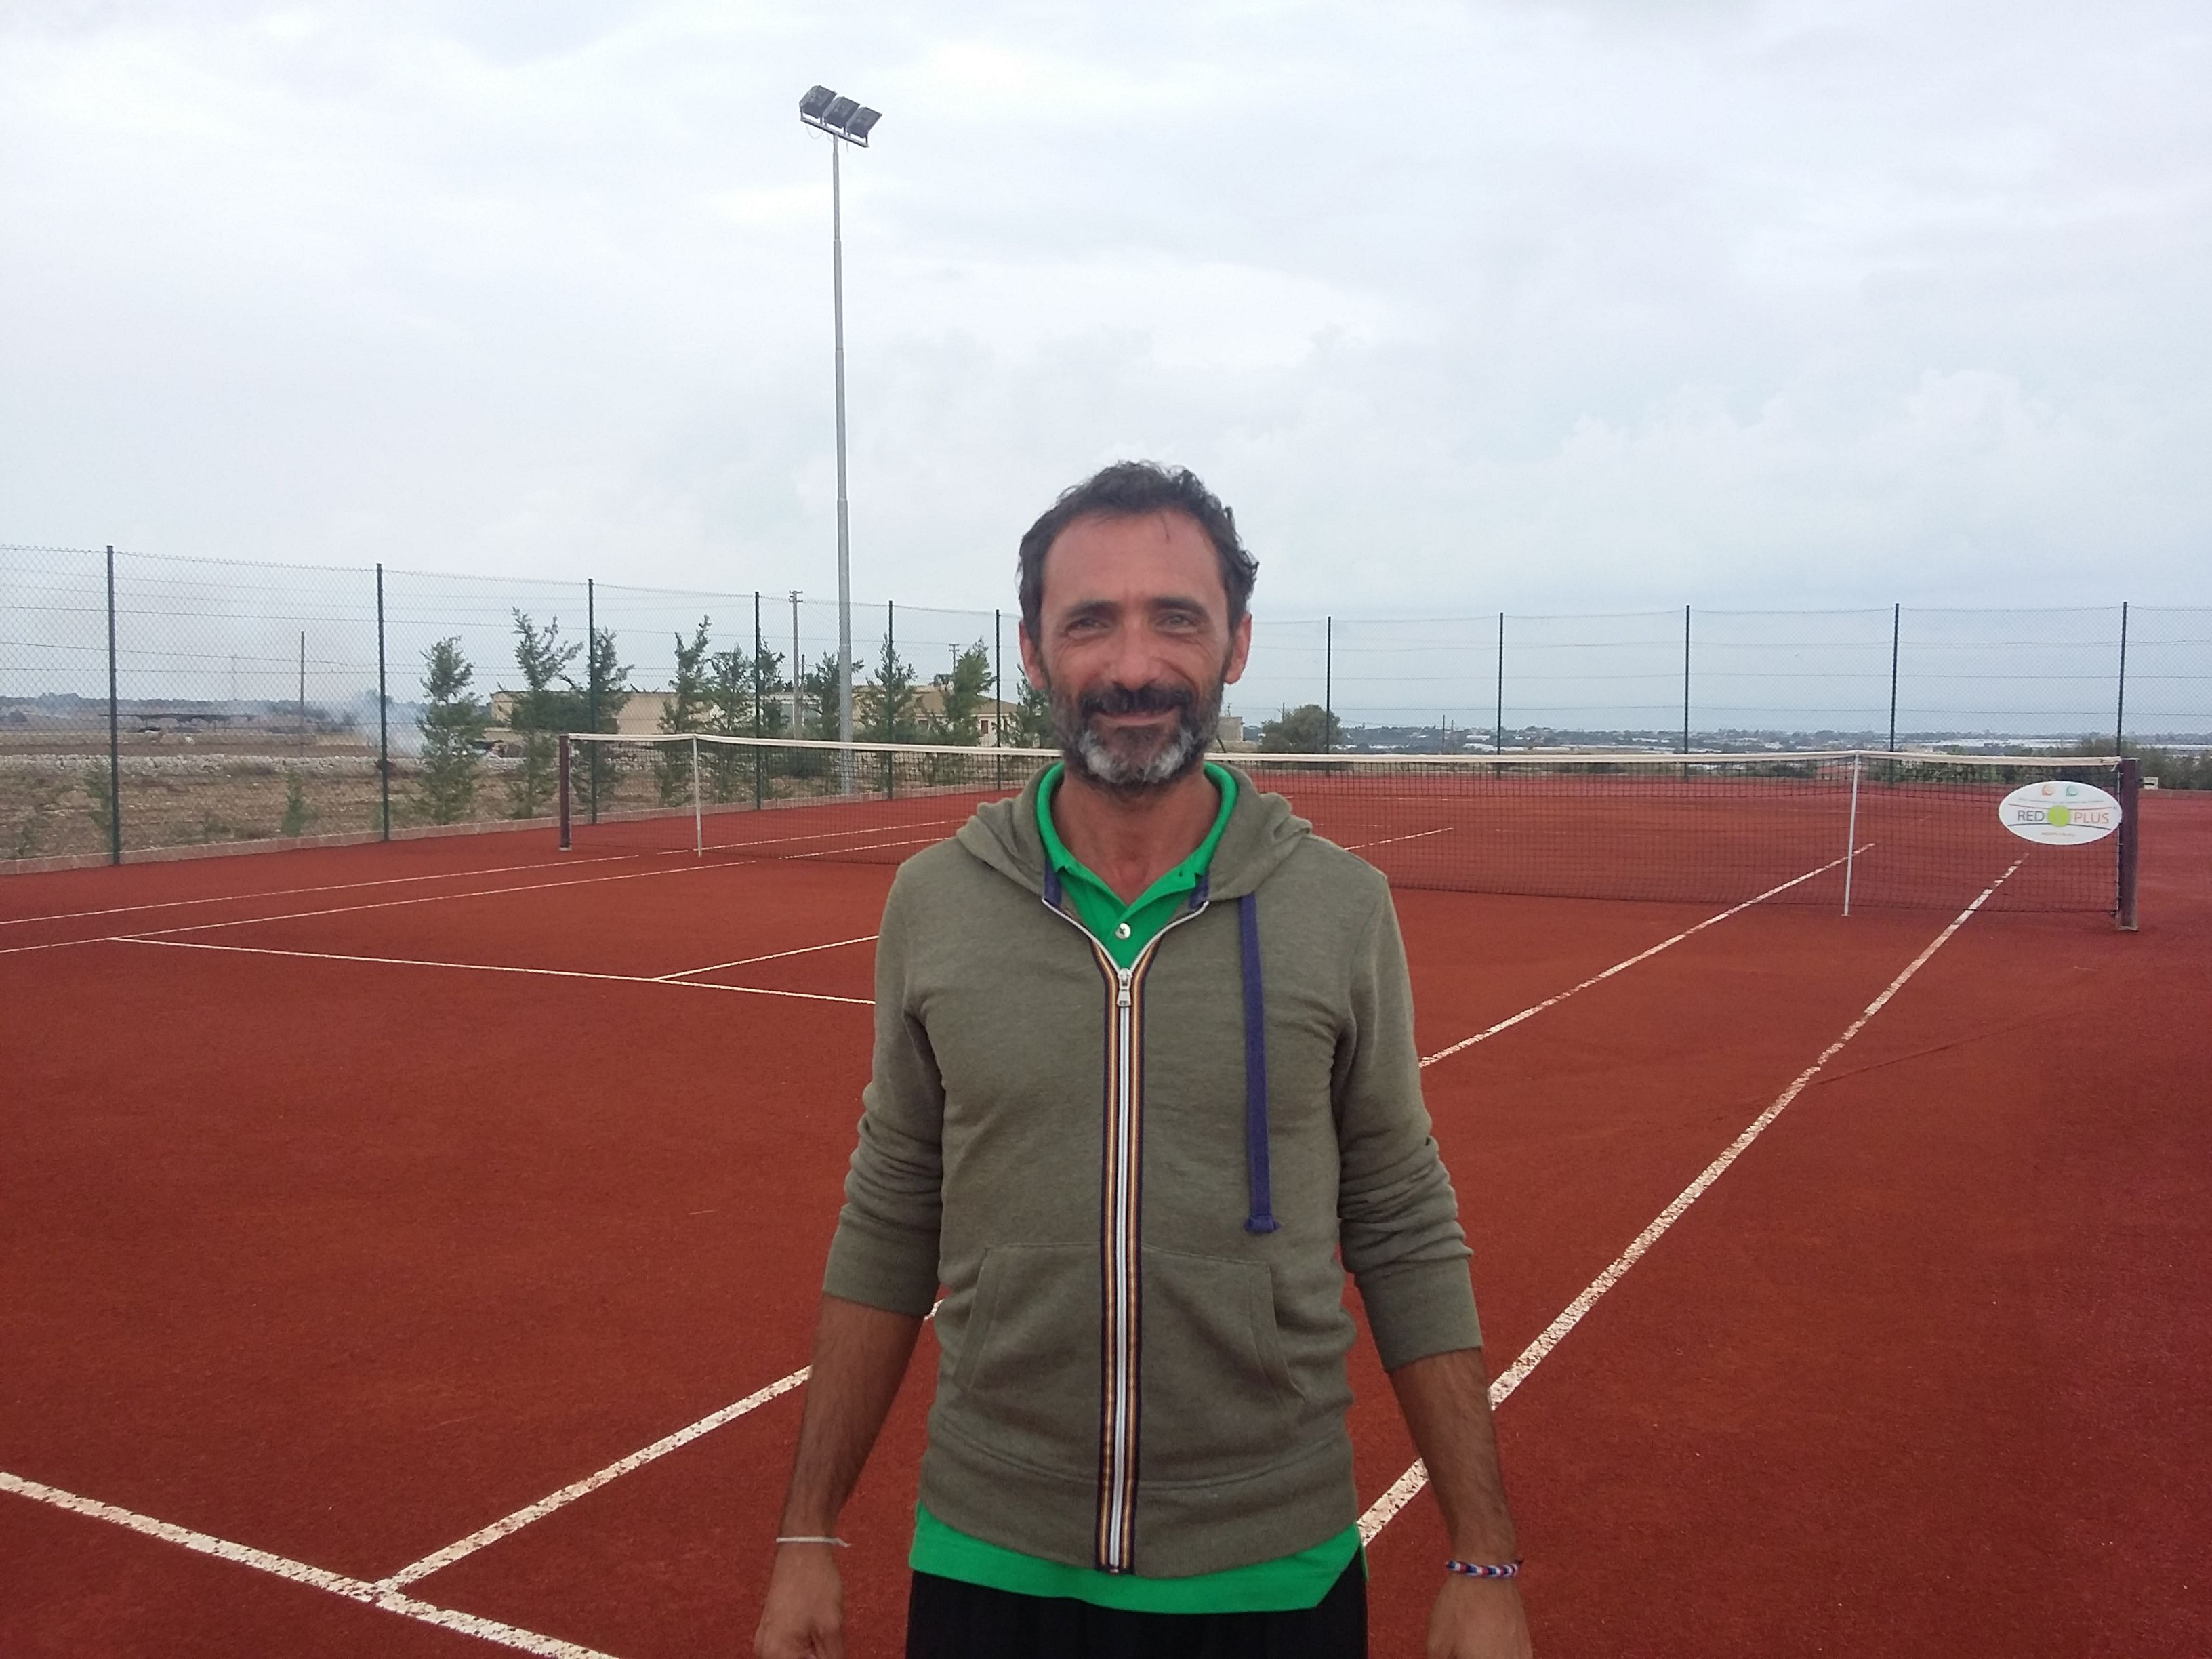  Costa Baronella ospita un corso di tennis: scopriamo il nuovo istruttore